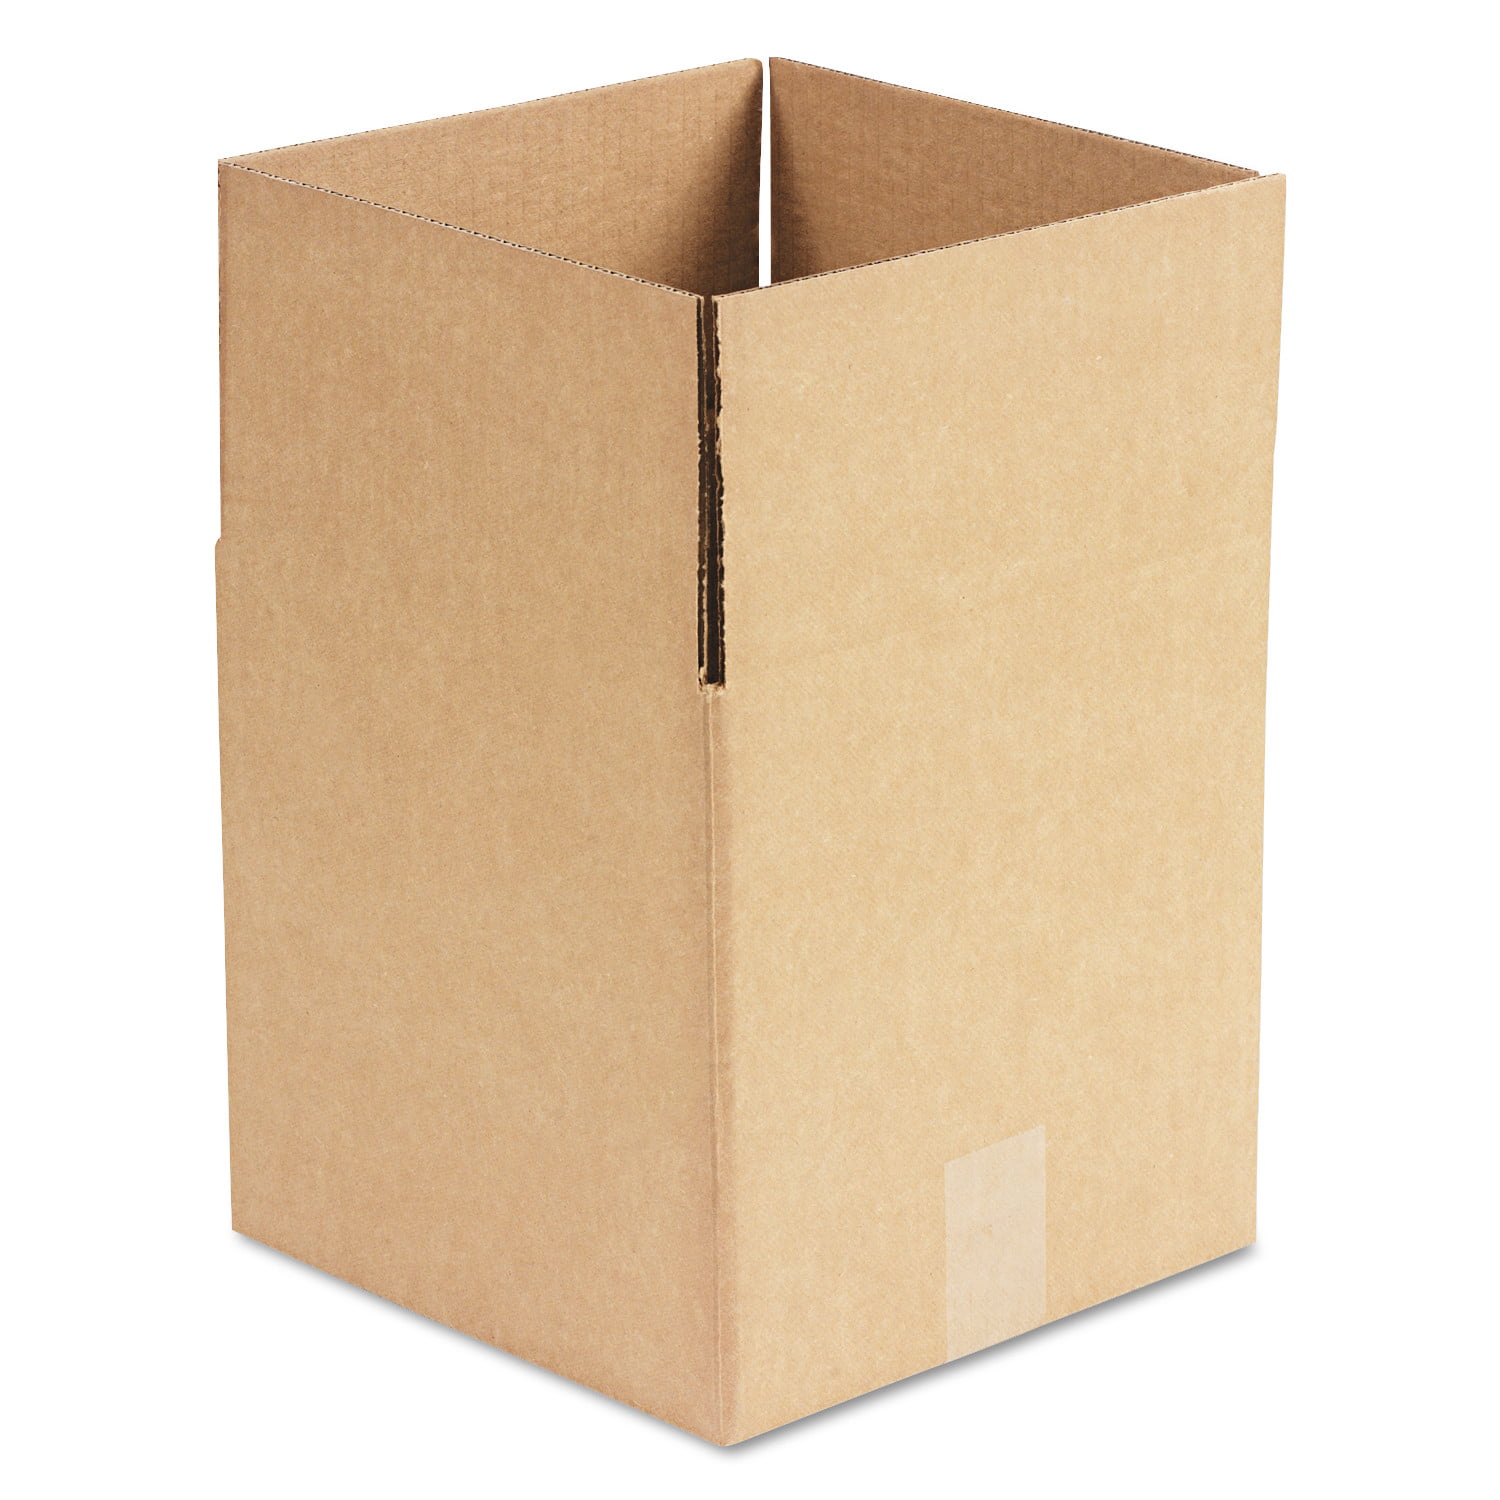 10 Postal Storage Cardboard Boxes 12.5 x 12.5 x 4" S/W 